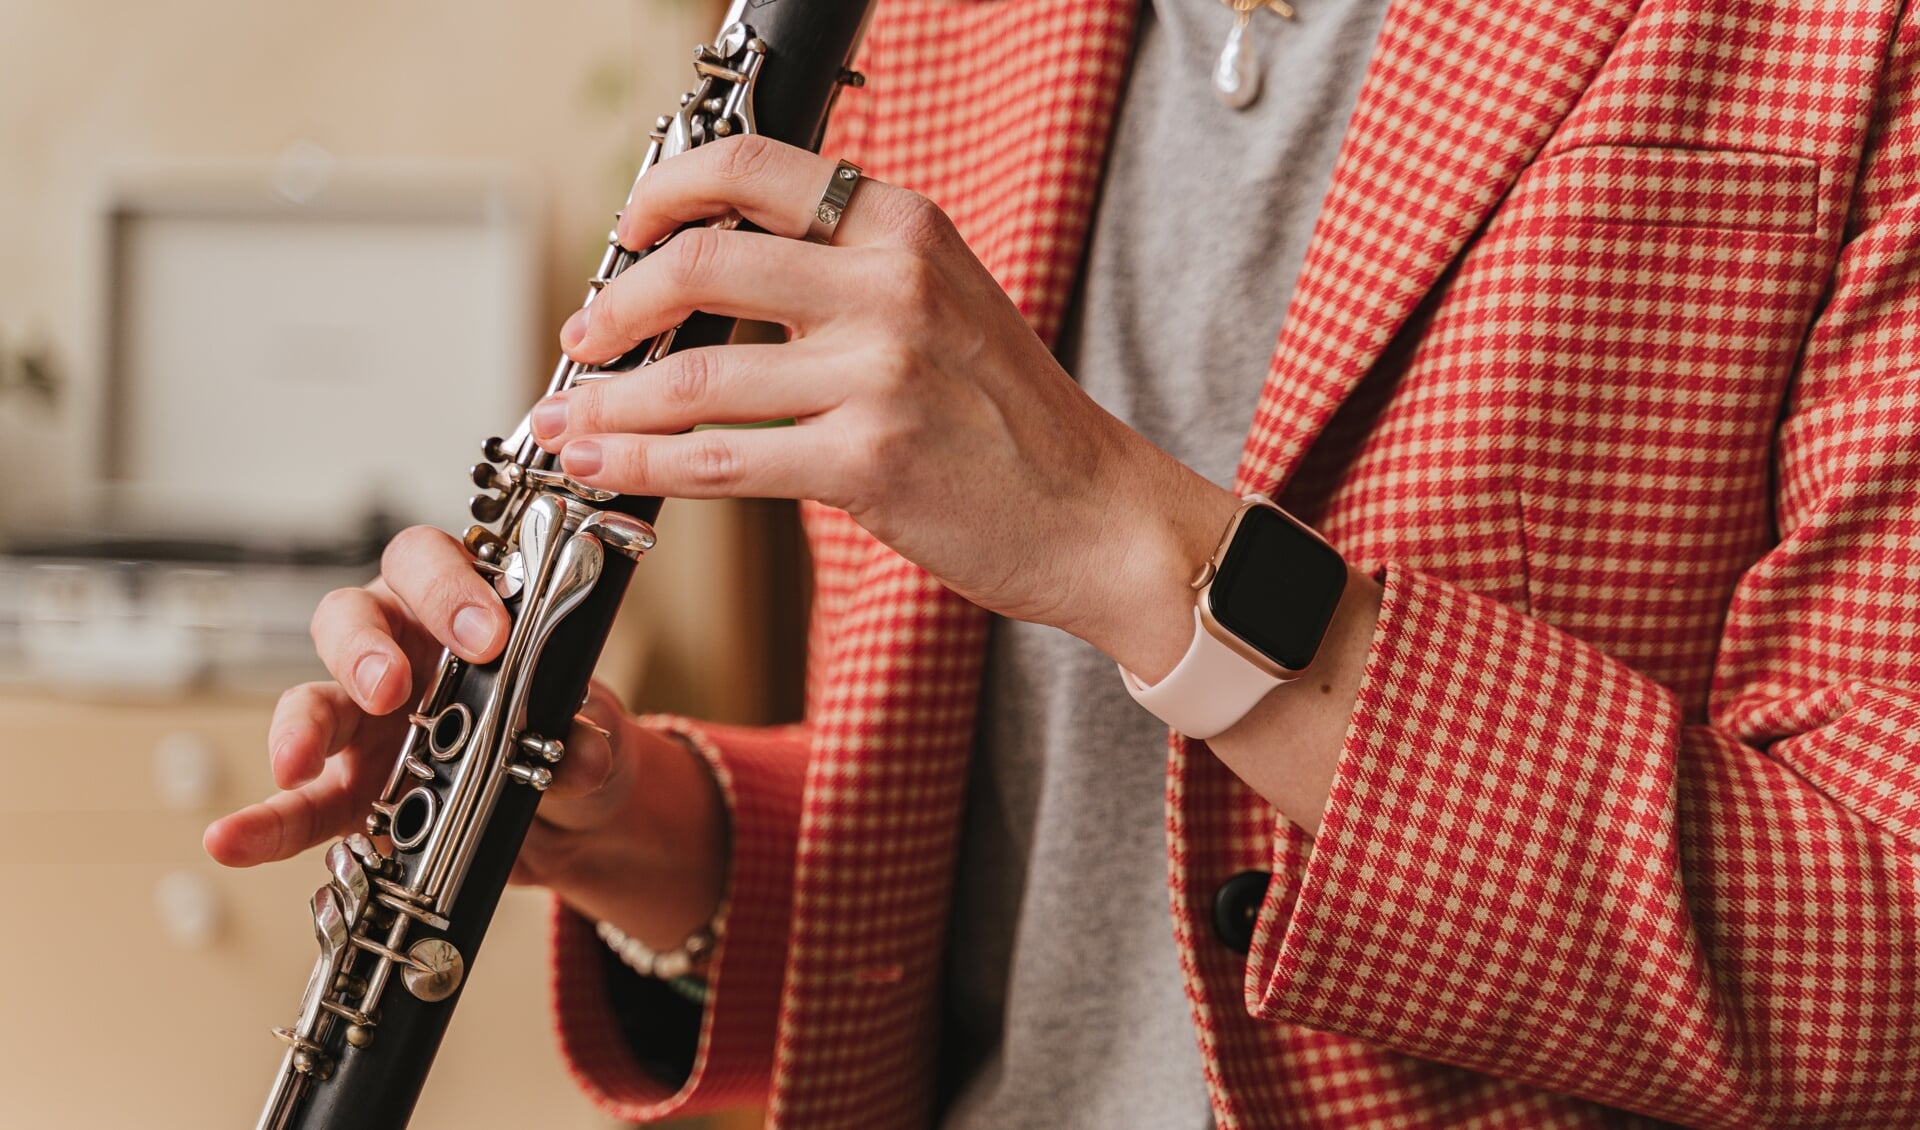 Ontdek met de proeflessen of klarinet spelen iets voor jou is.